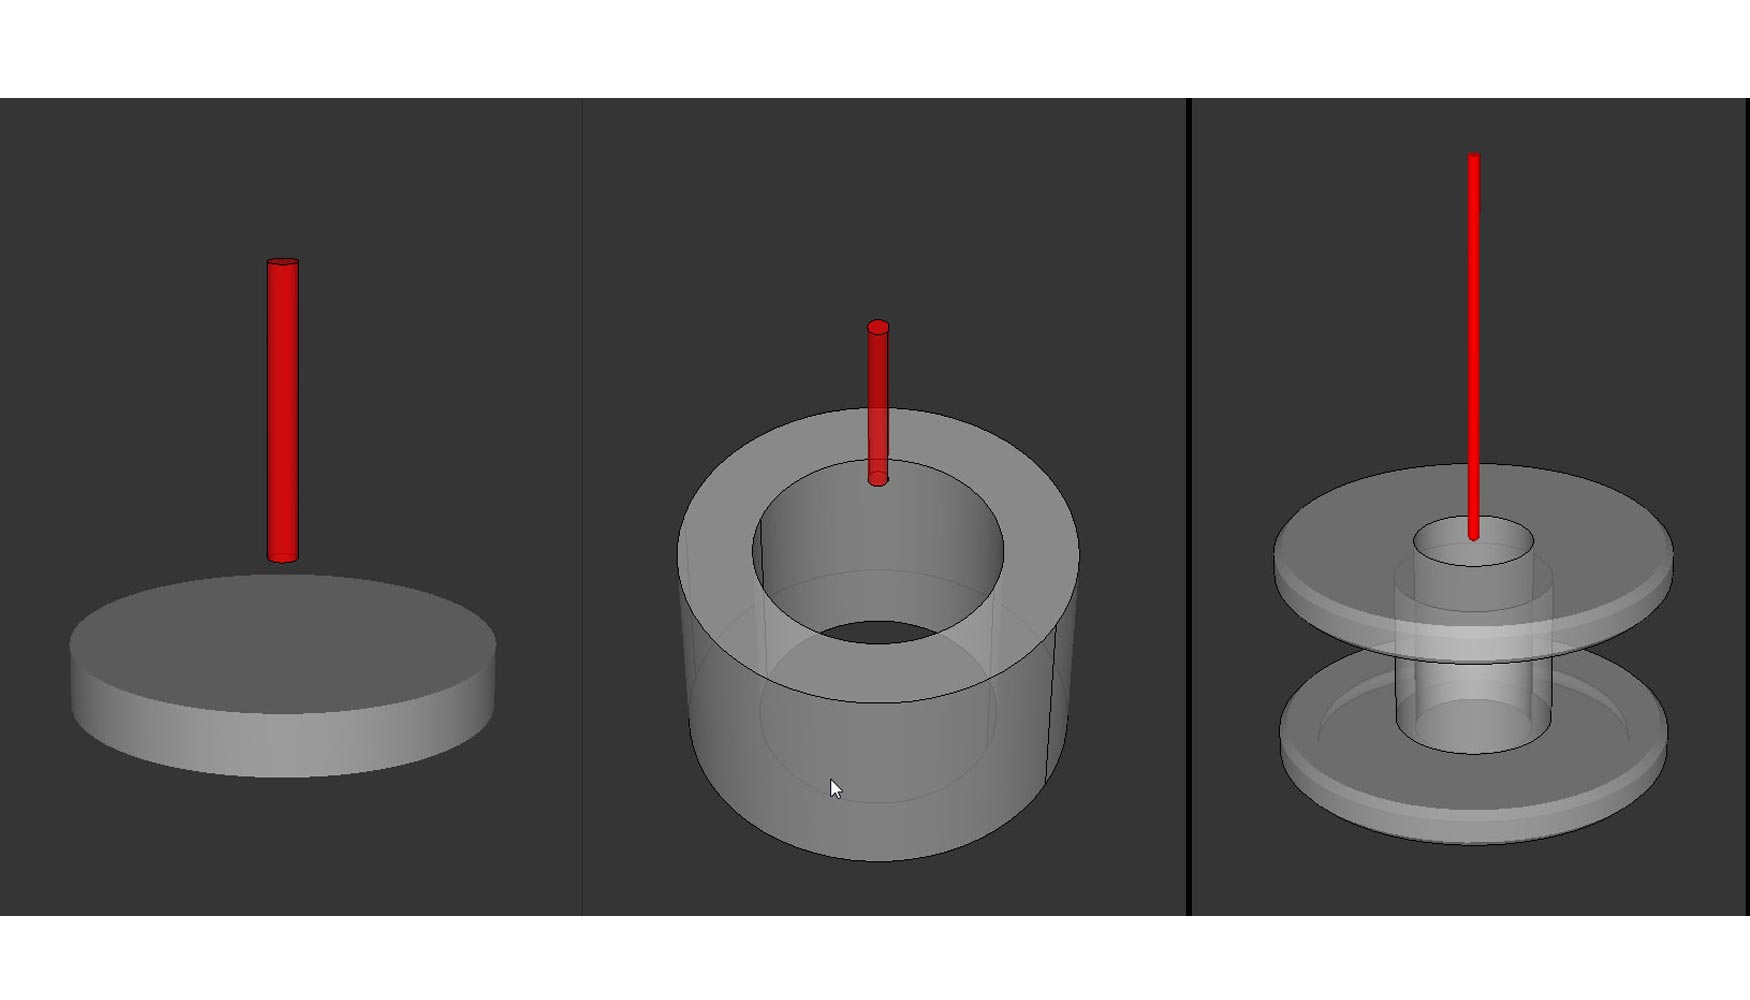 Nuevo grfico 3D, nuevas formas: Cilindros, cilindros huecos y piezas en bruto con simetra rotacional